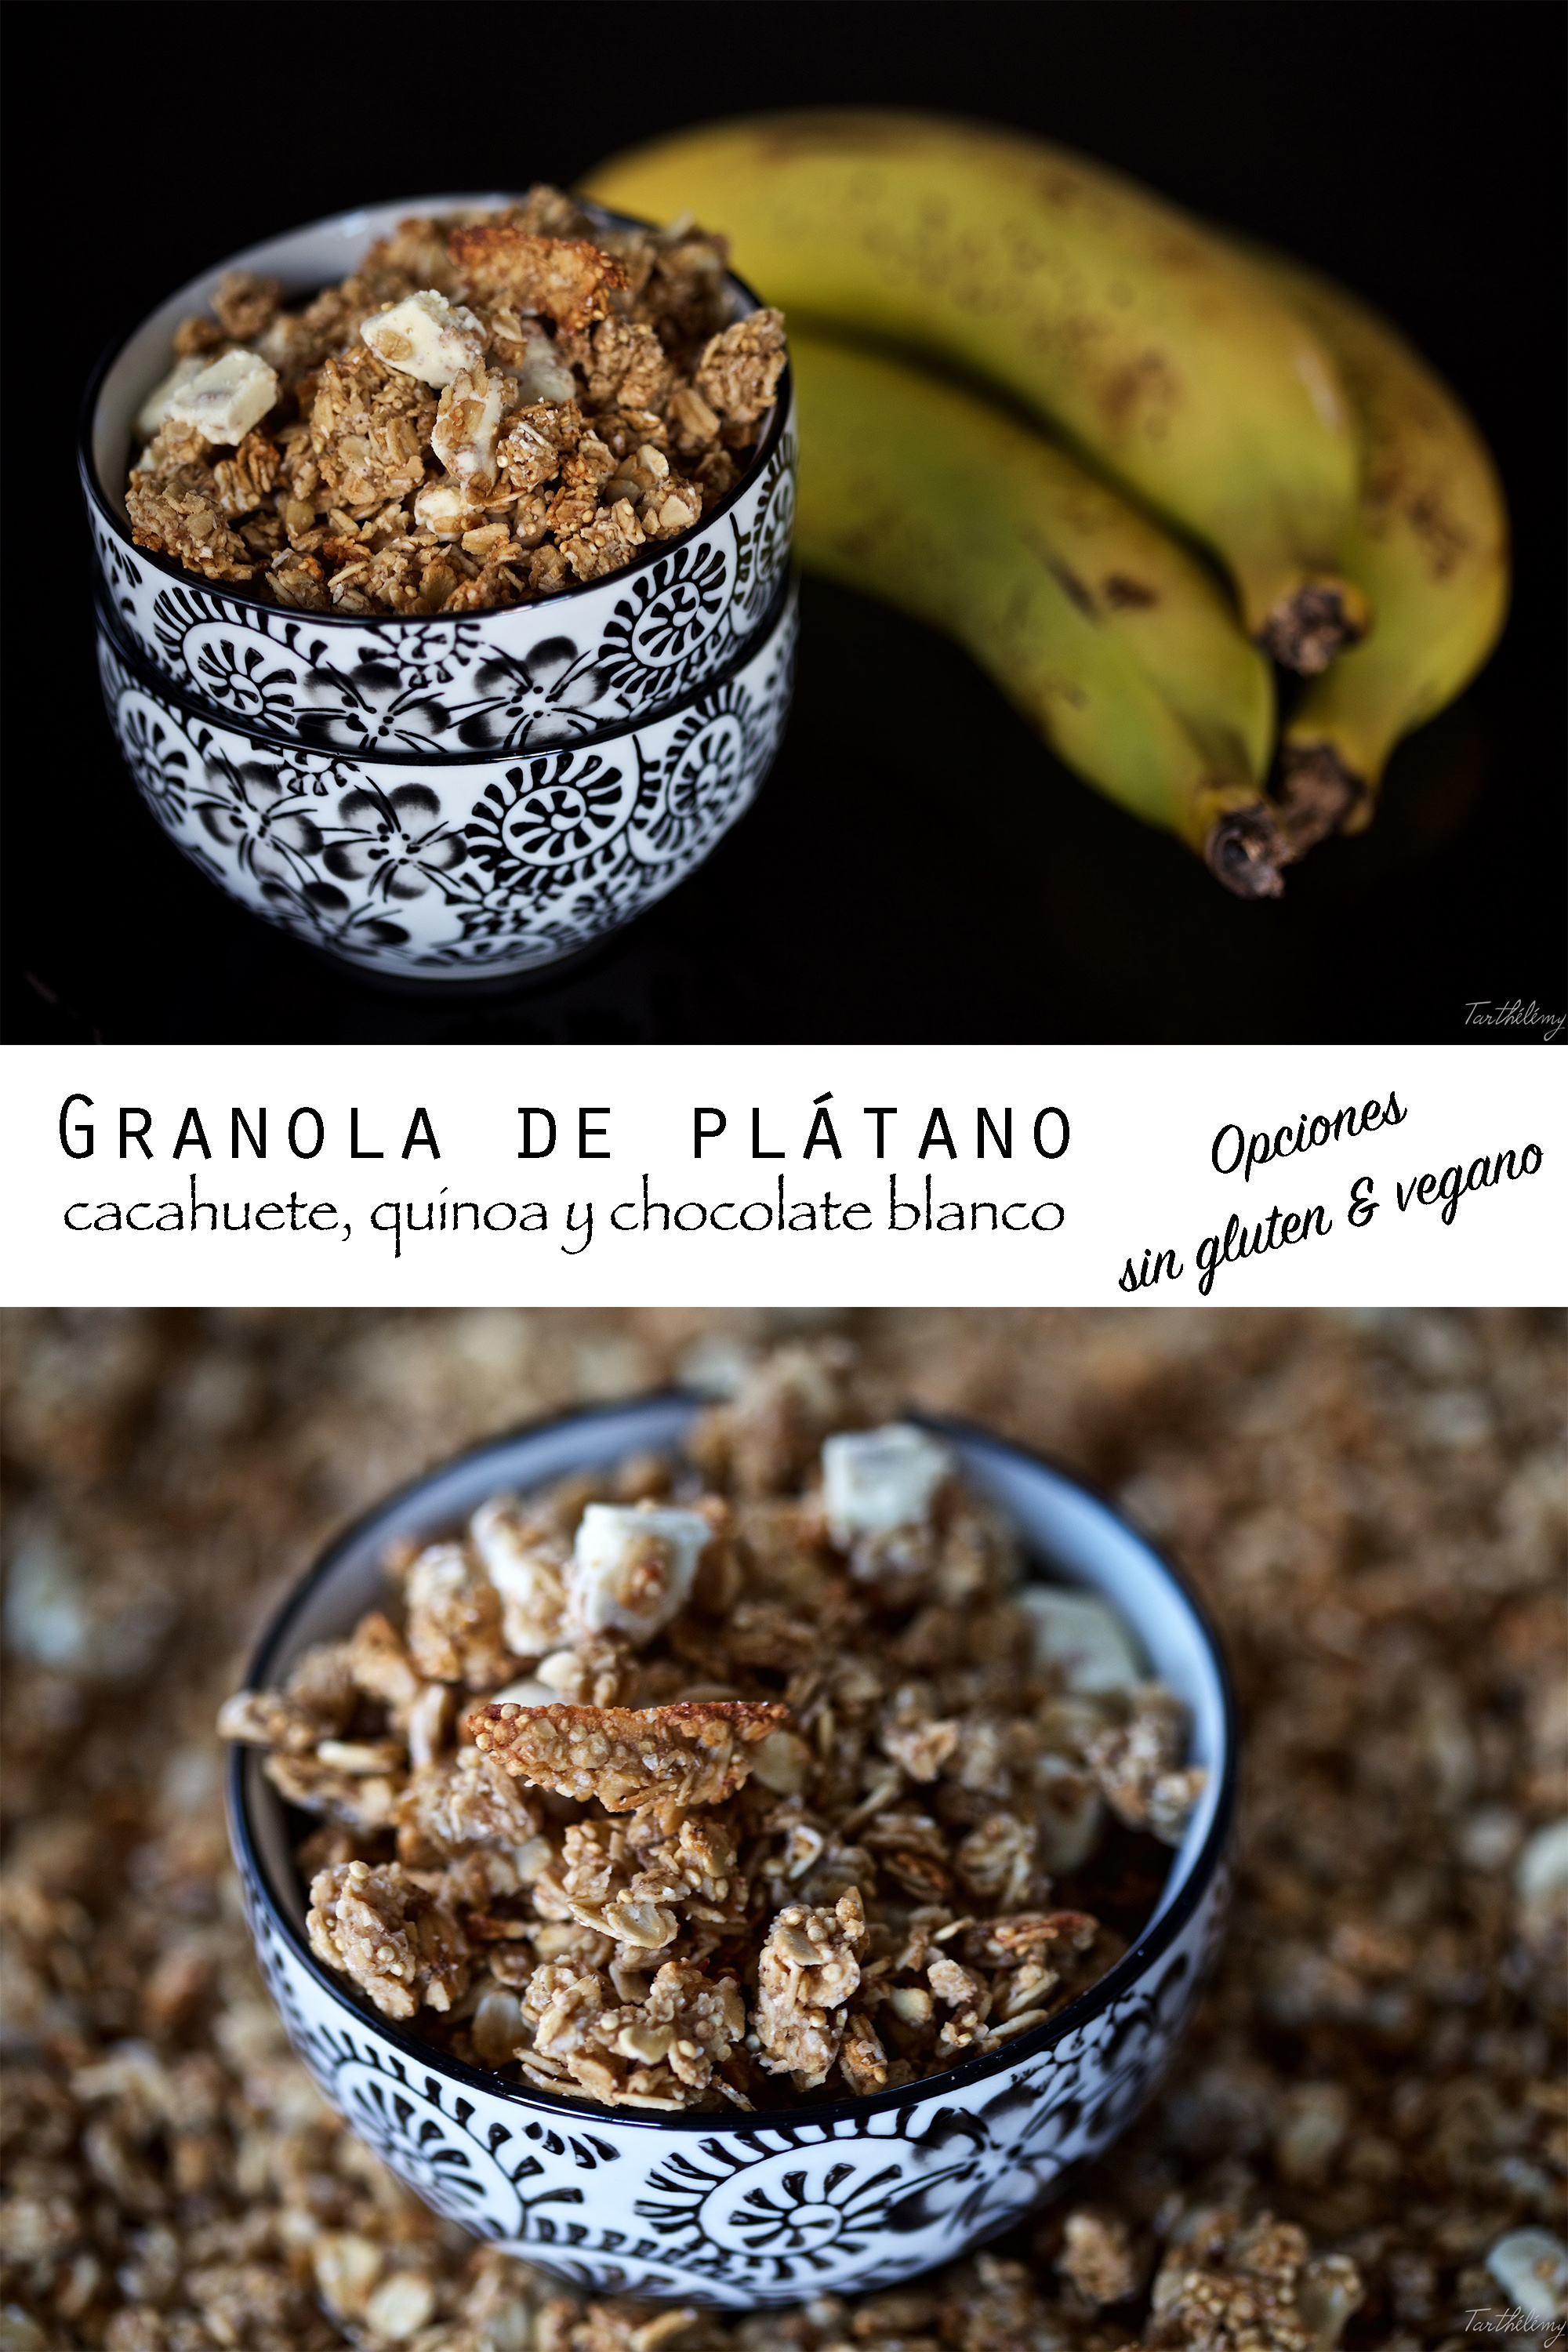 Granola de plátano, cacahuete, quinoa y chocolate blanco (opciones sin gluten y vegano)